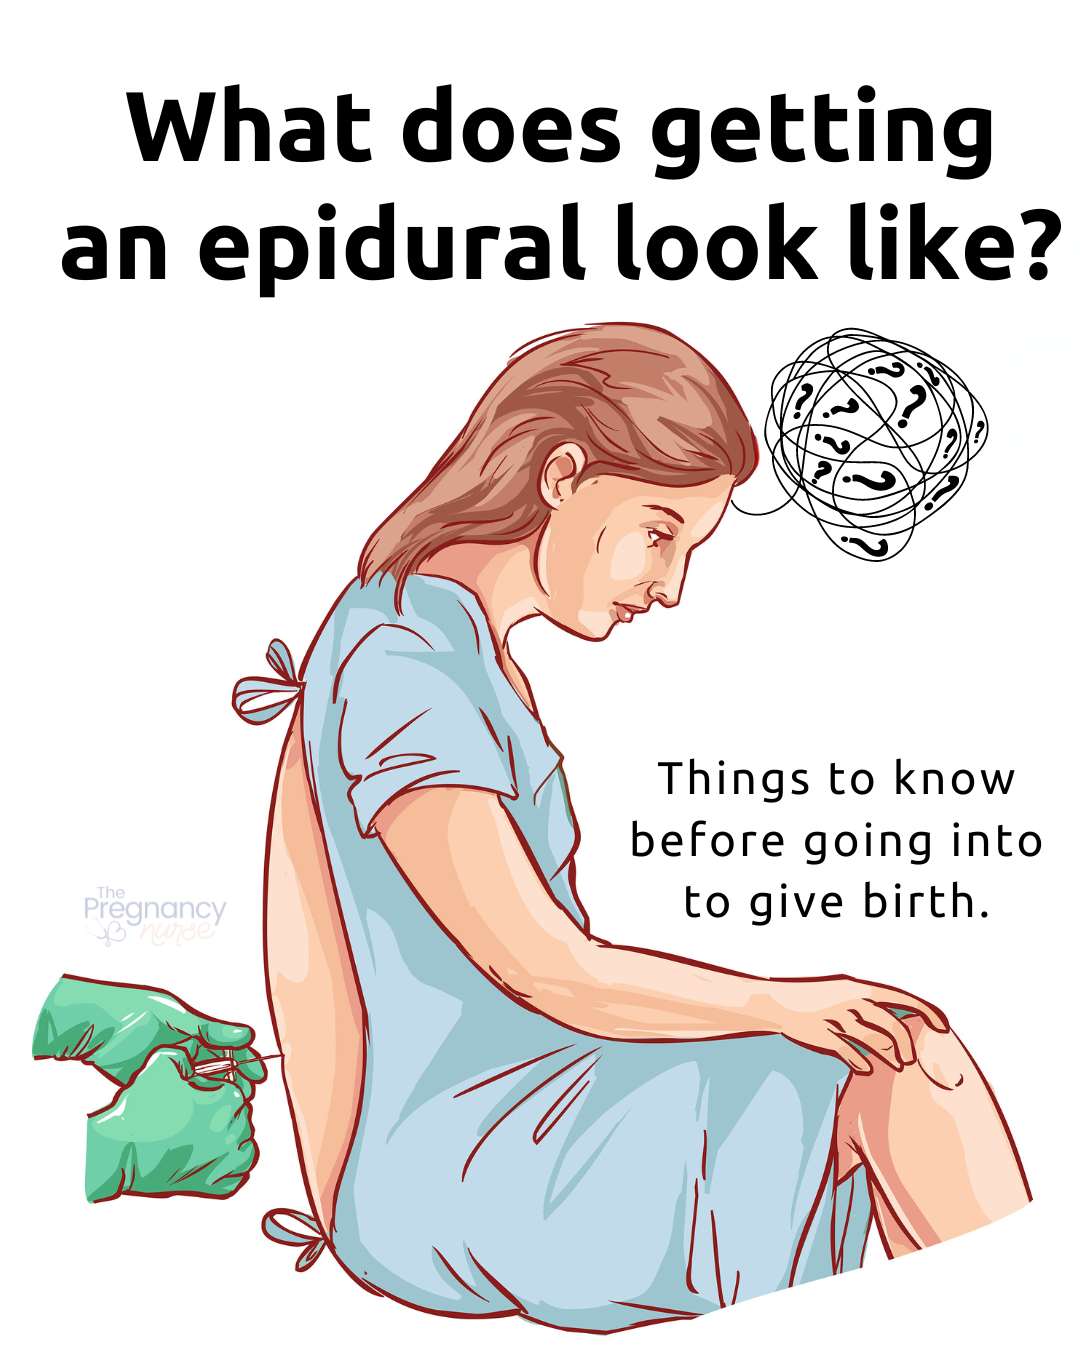 prepare to get your epidural!